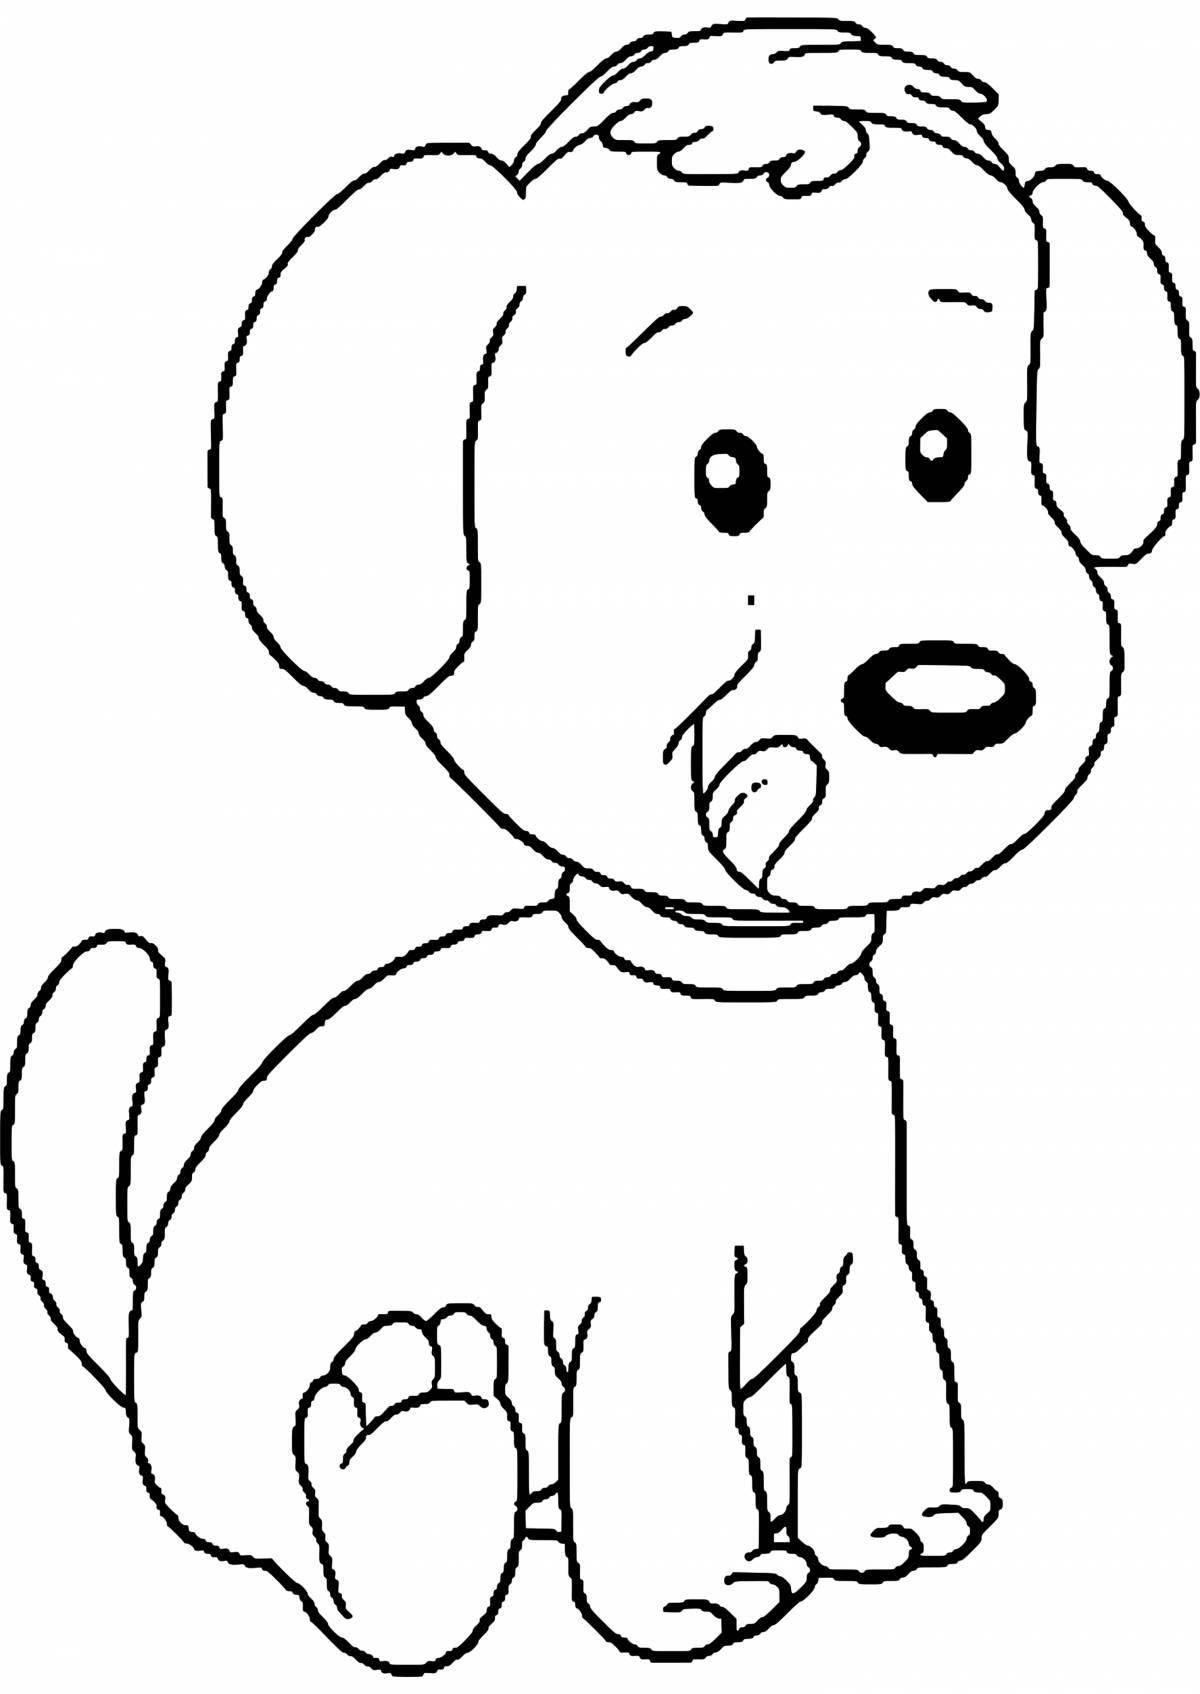 Развлекательная раскраска собака для детей 4-5 лет